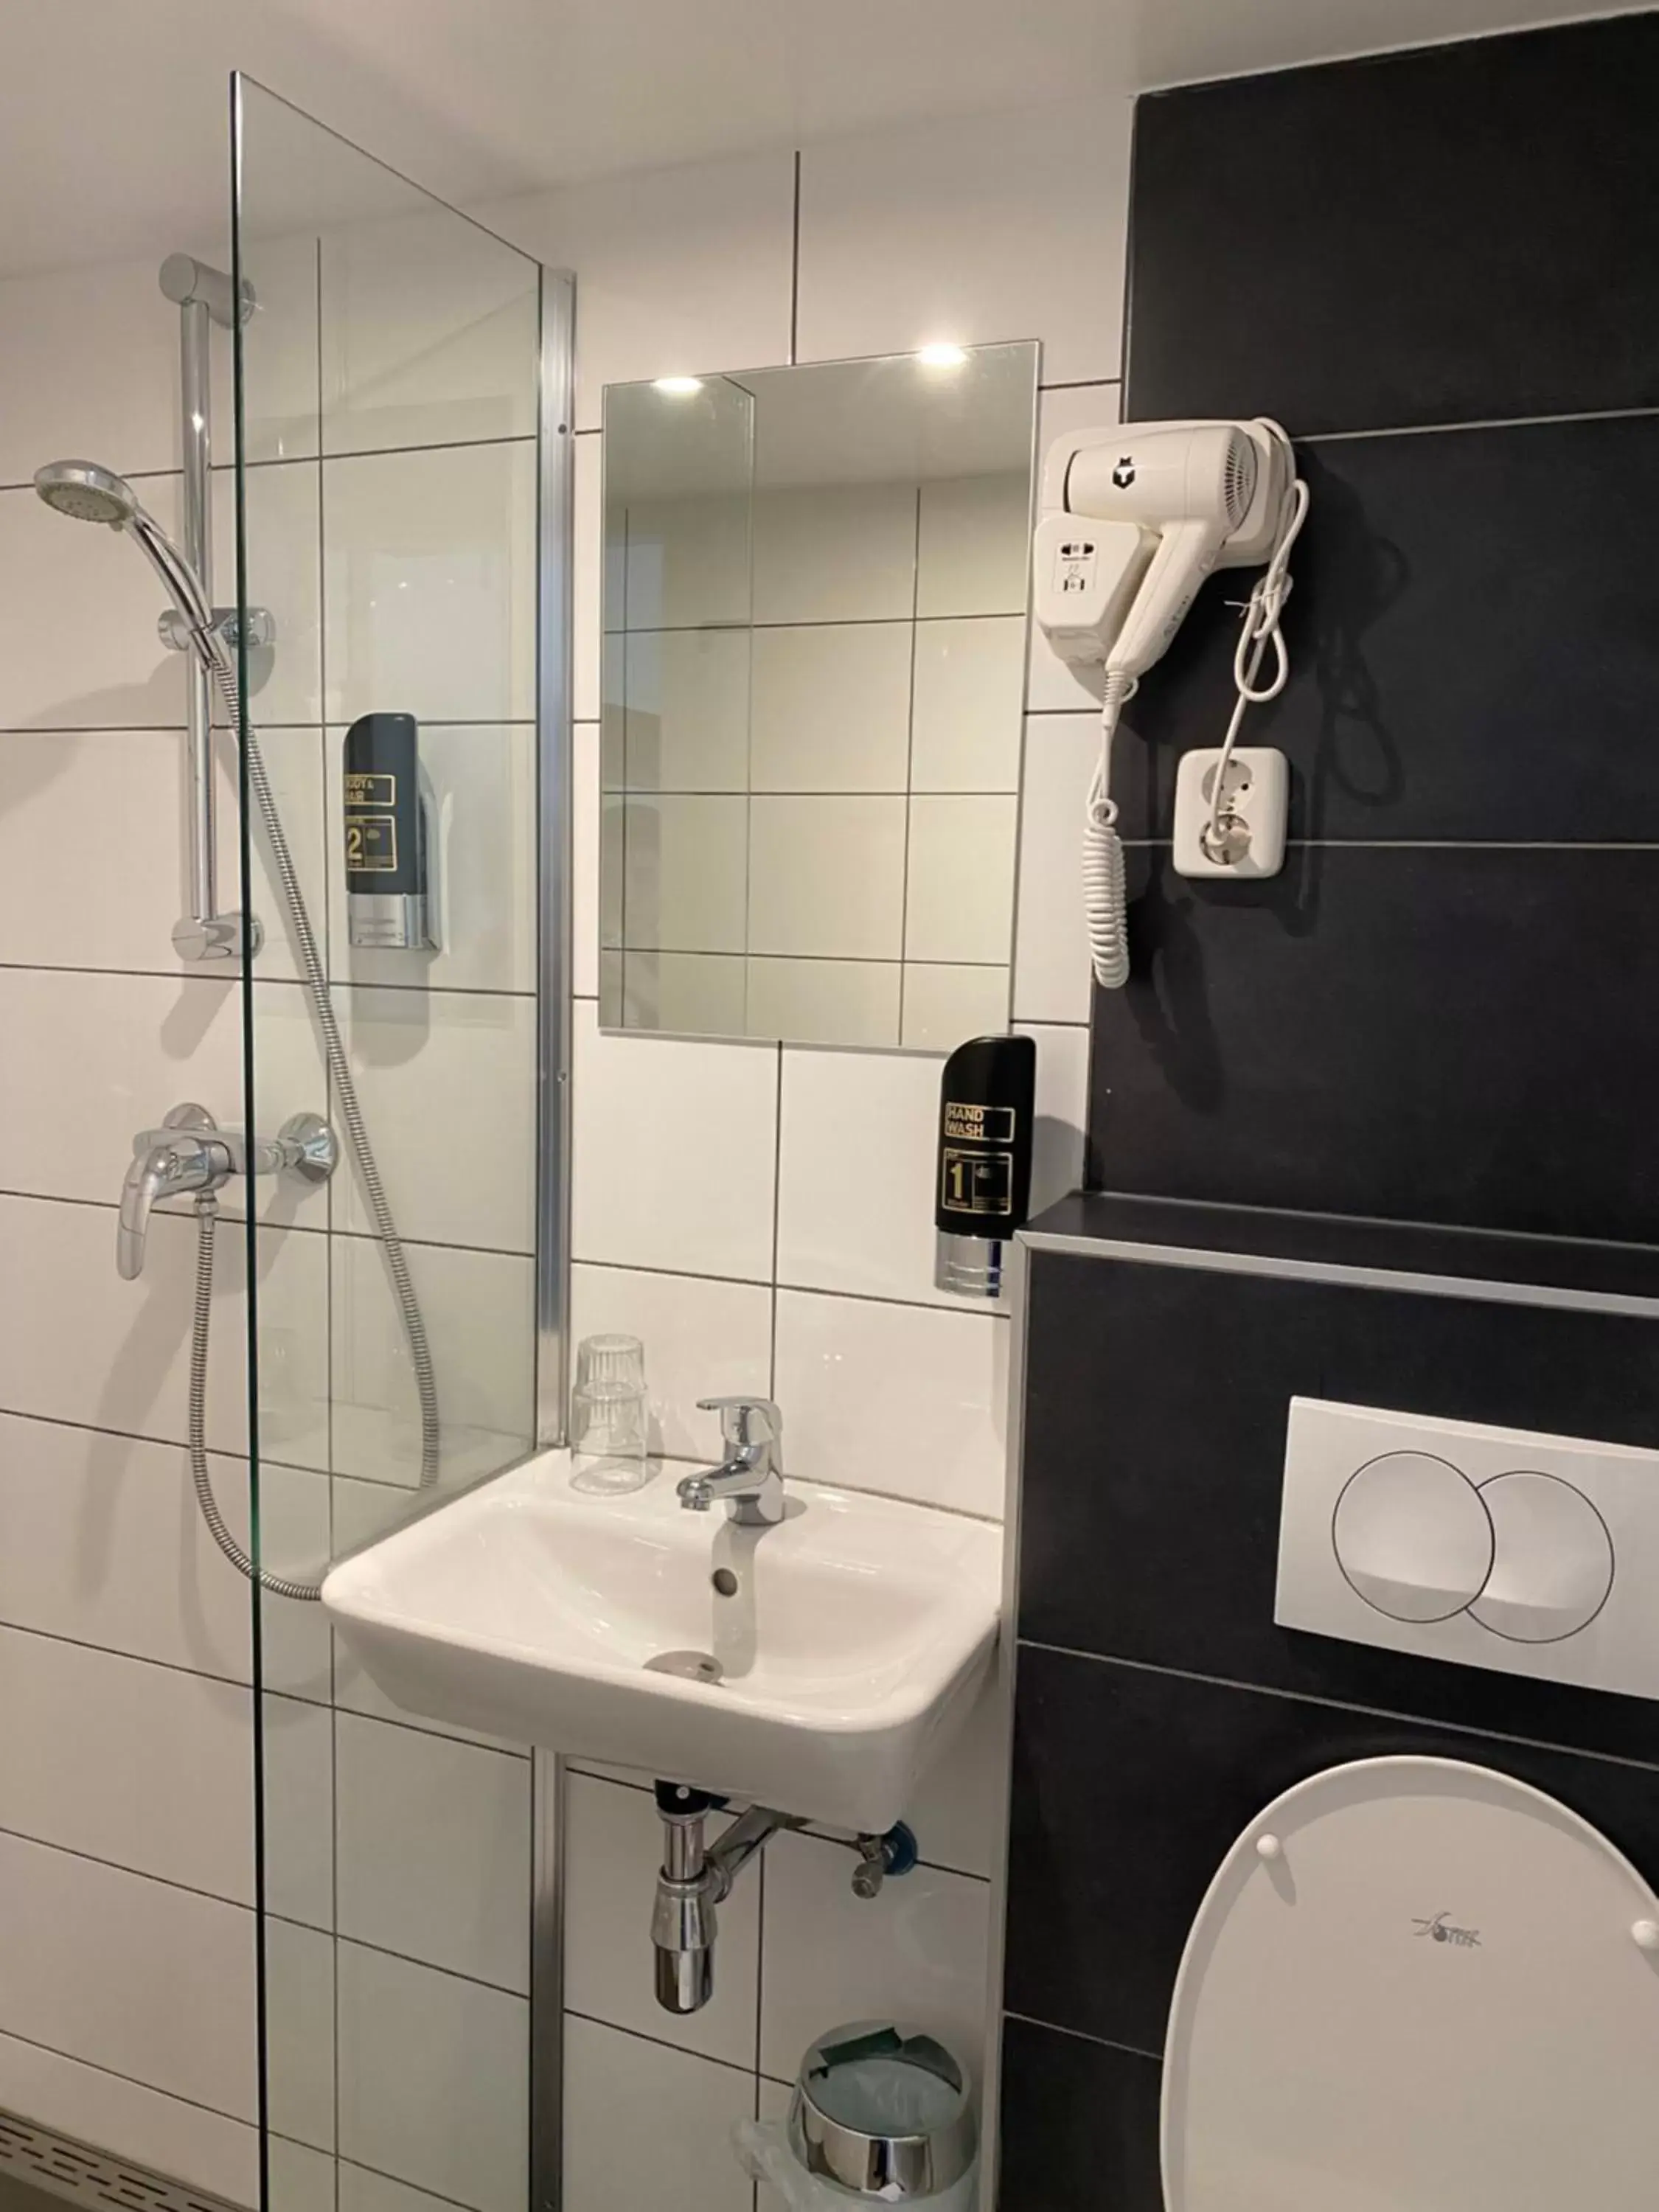 Bathroom in Hotel de Munck